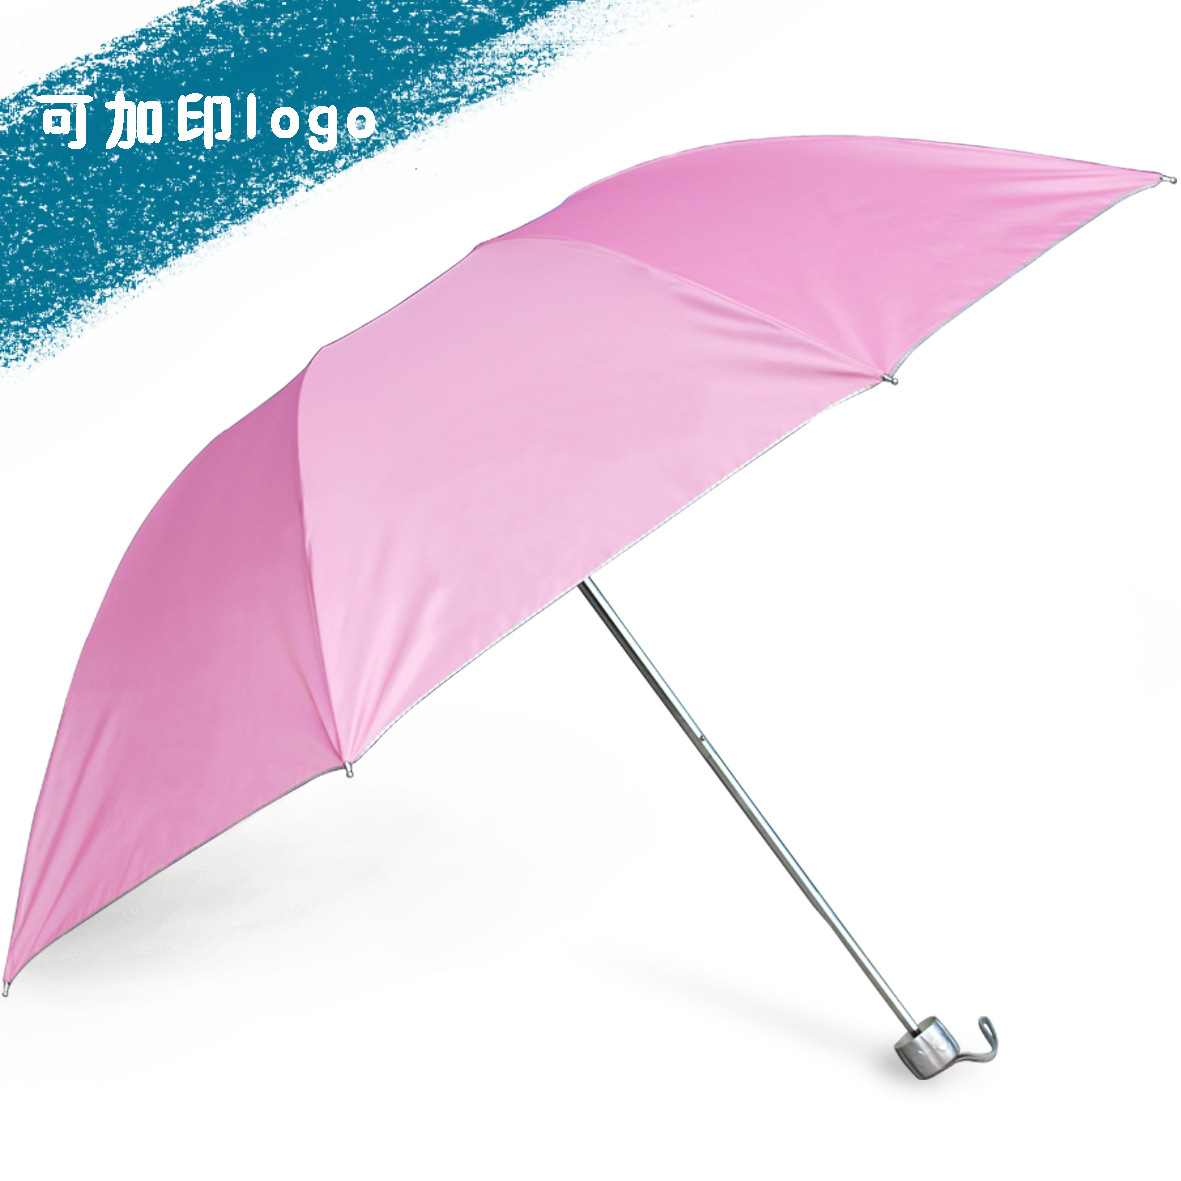 广告伞定制 精品8骨银胶定做公司logo创意防紫外线晴雨伞厂家直销